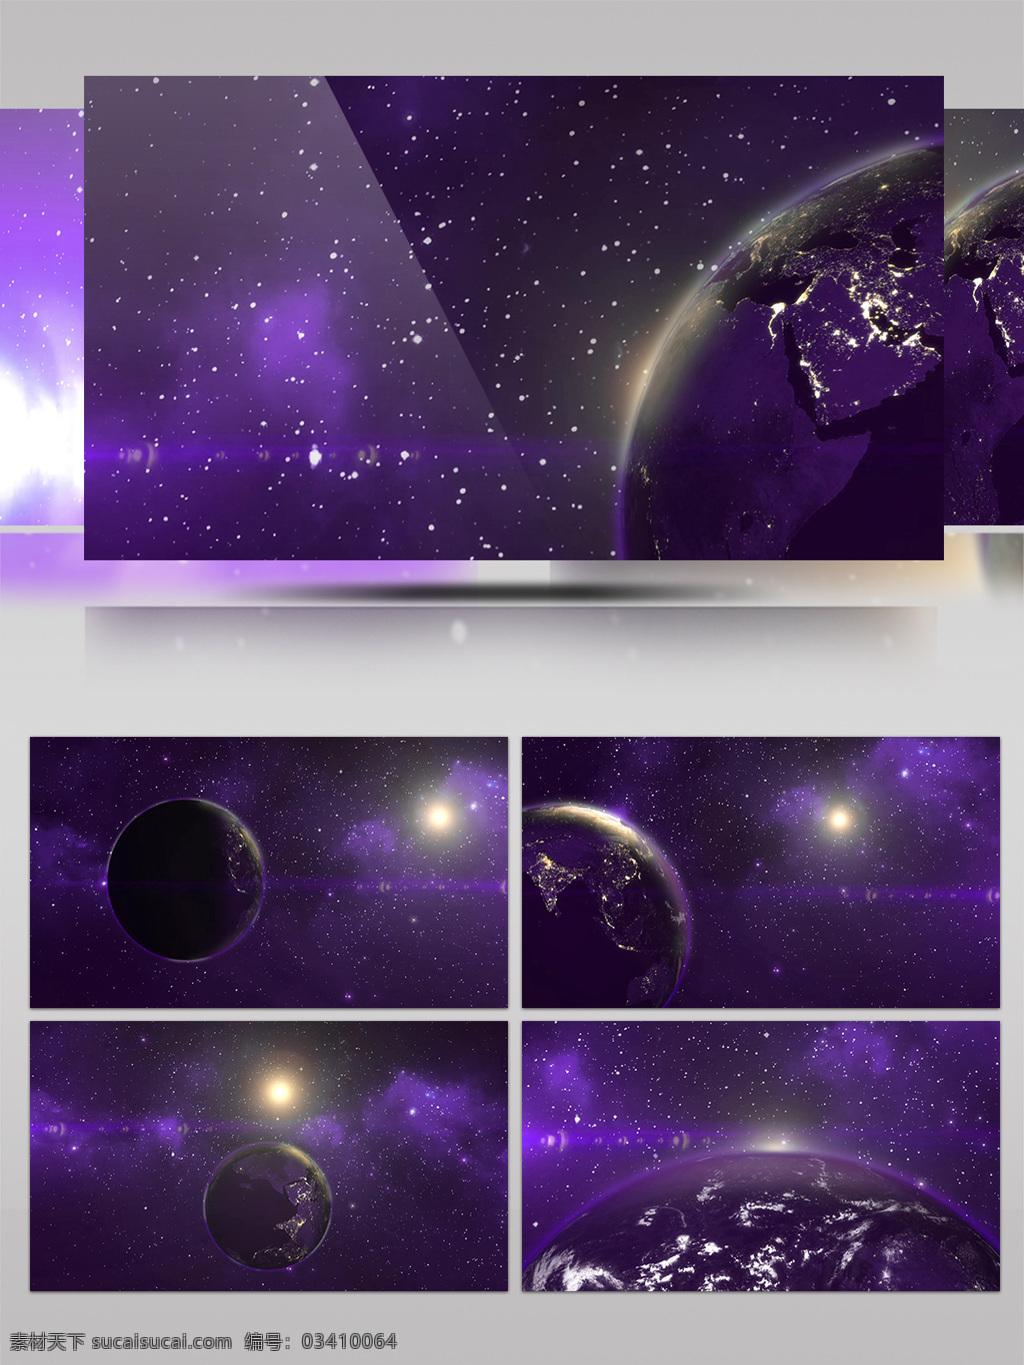 大气 震撼 宇宙 地球 空间 led 通用 背景 星空 唯美 酷炫 紫色